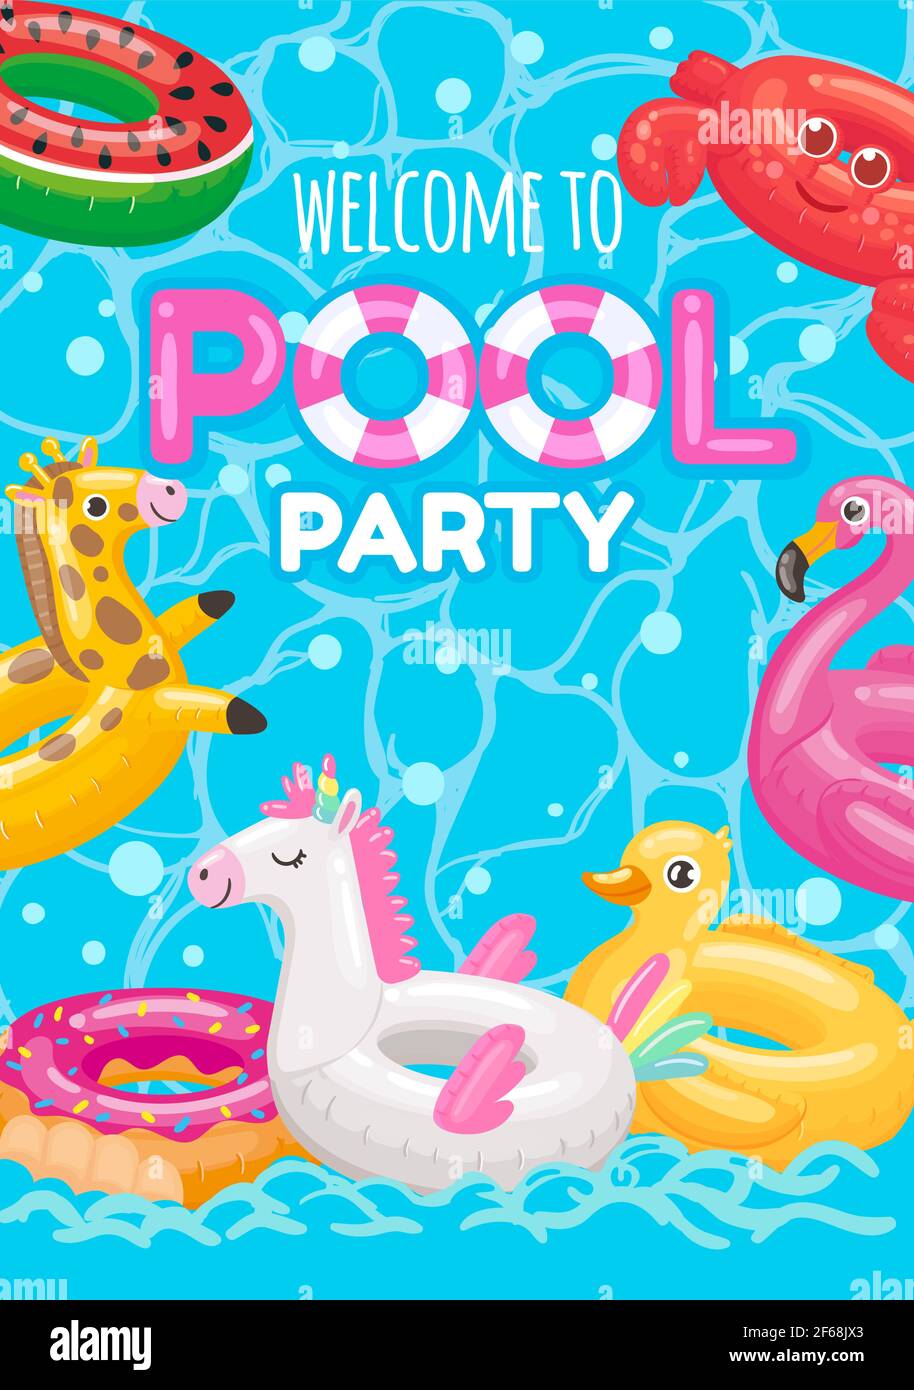 Willkommen bei Pool-Party mit aufblasbaren Ringen Spielzeug Stock Vektor